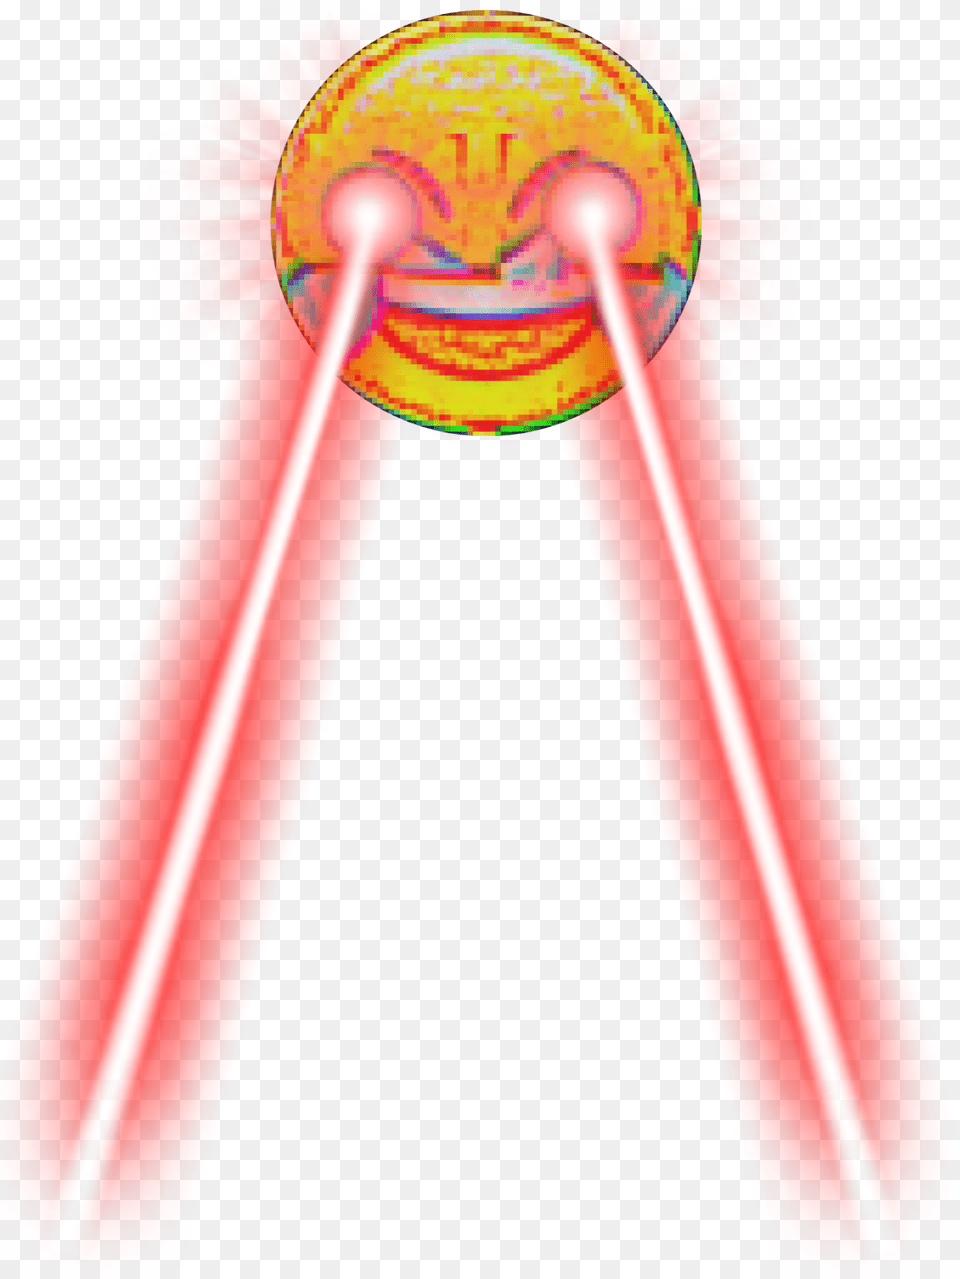 Dank Meme Laughing Emoji Crying Laser Laughing Emoji Meme, Dynamite, Weapon Png